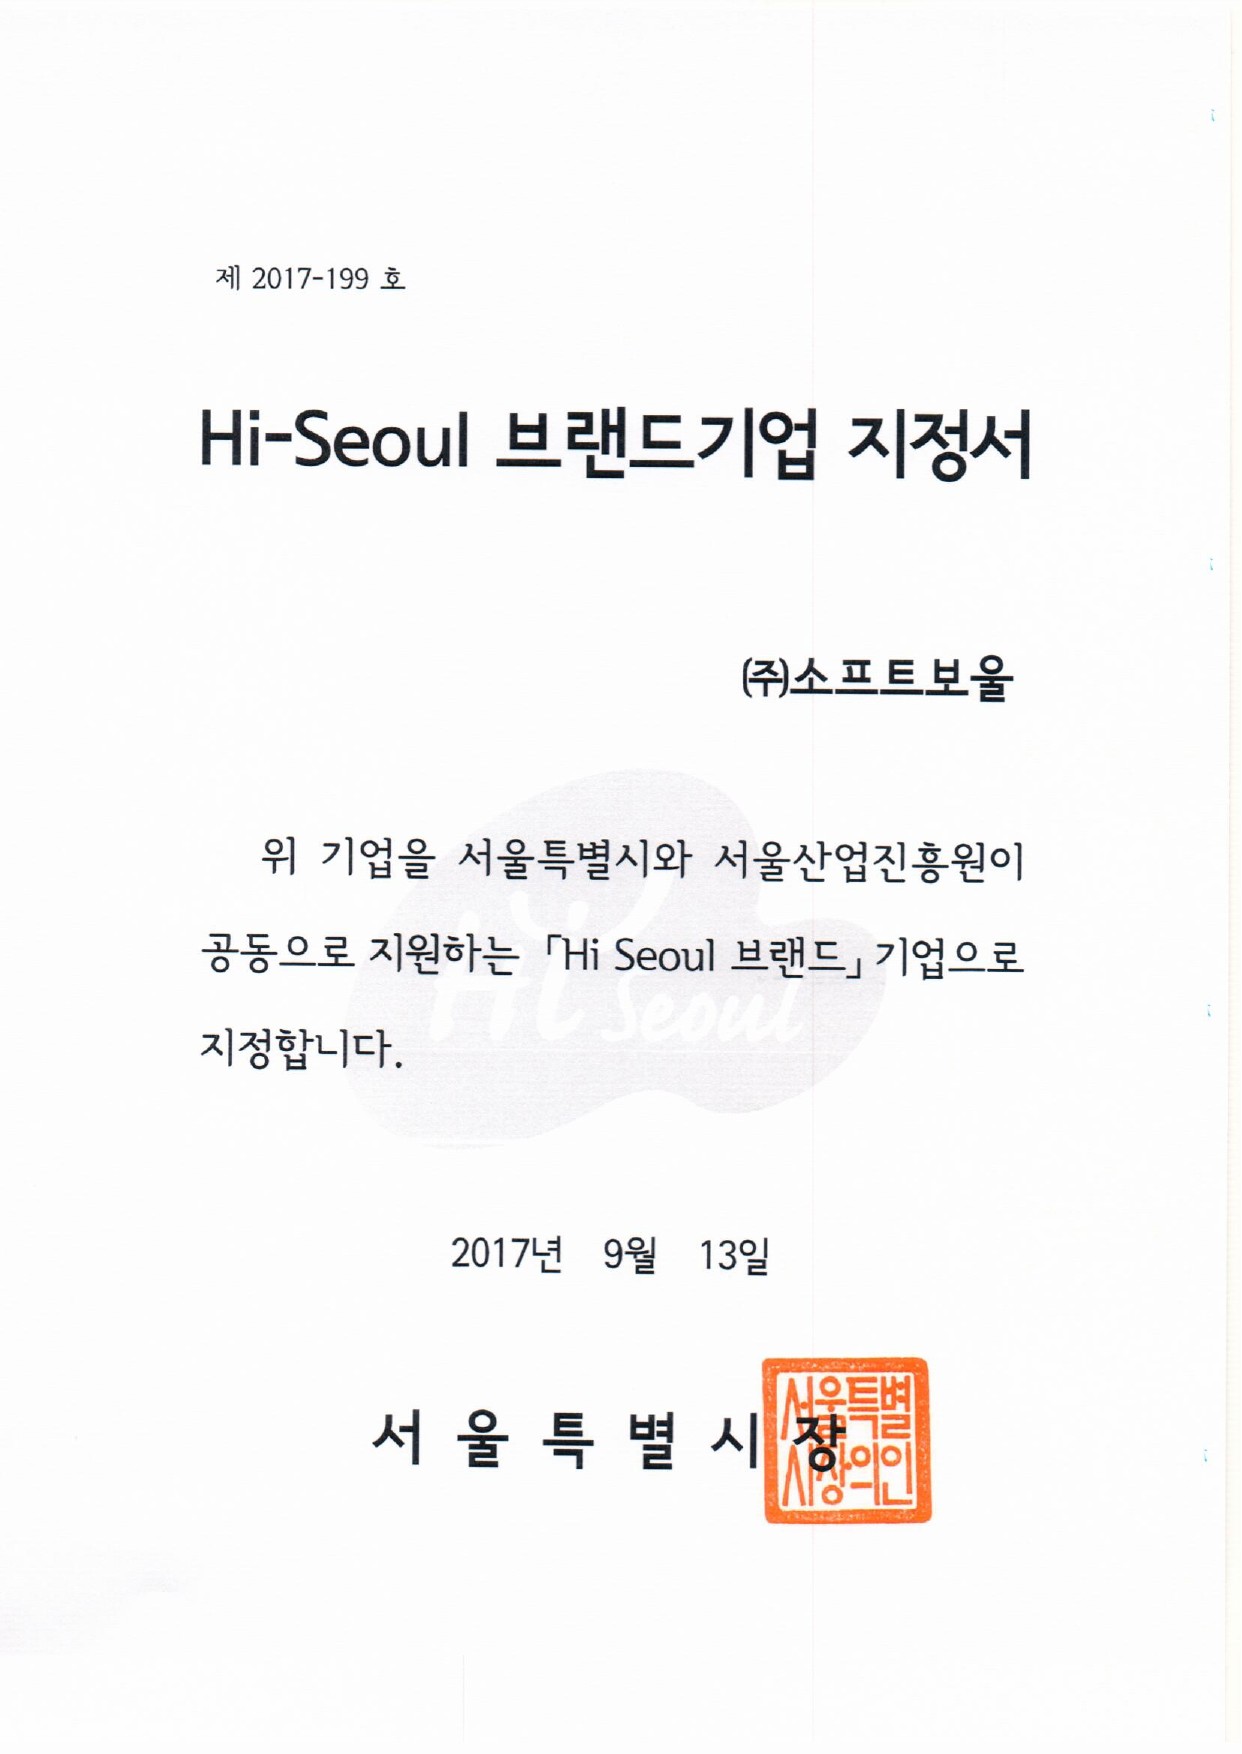 Hi-seoul 브랜드기업 지정서.jpg